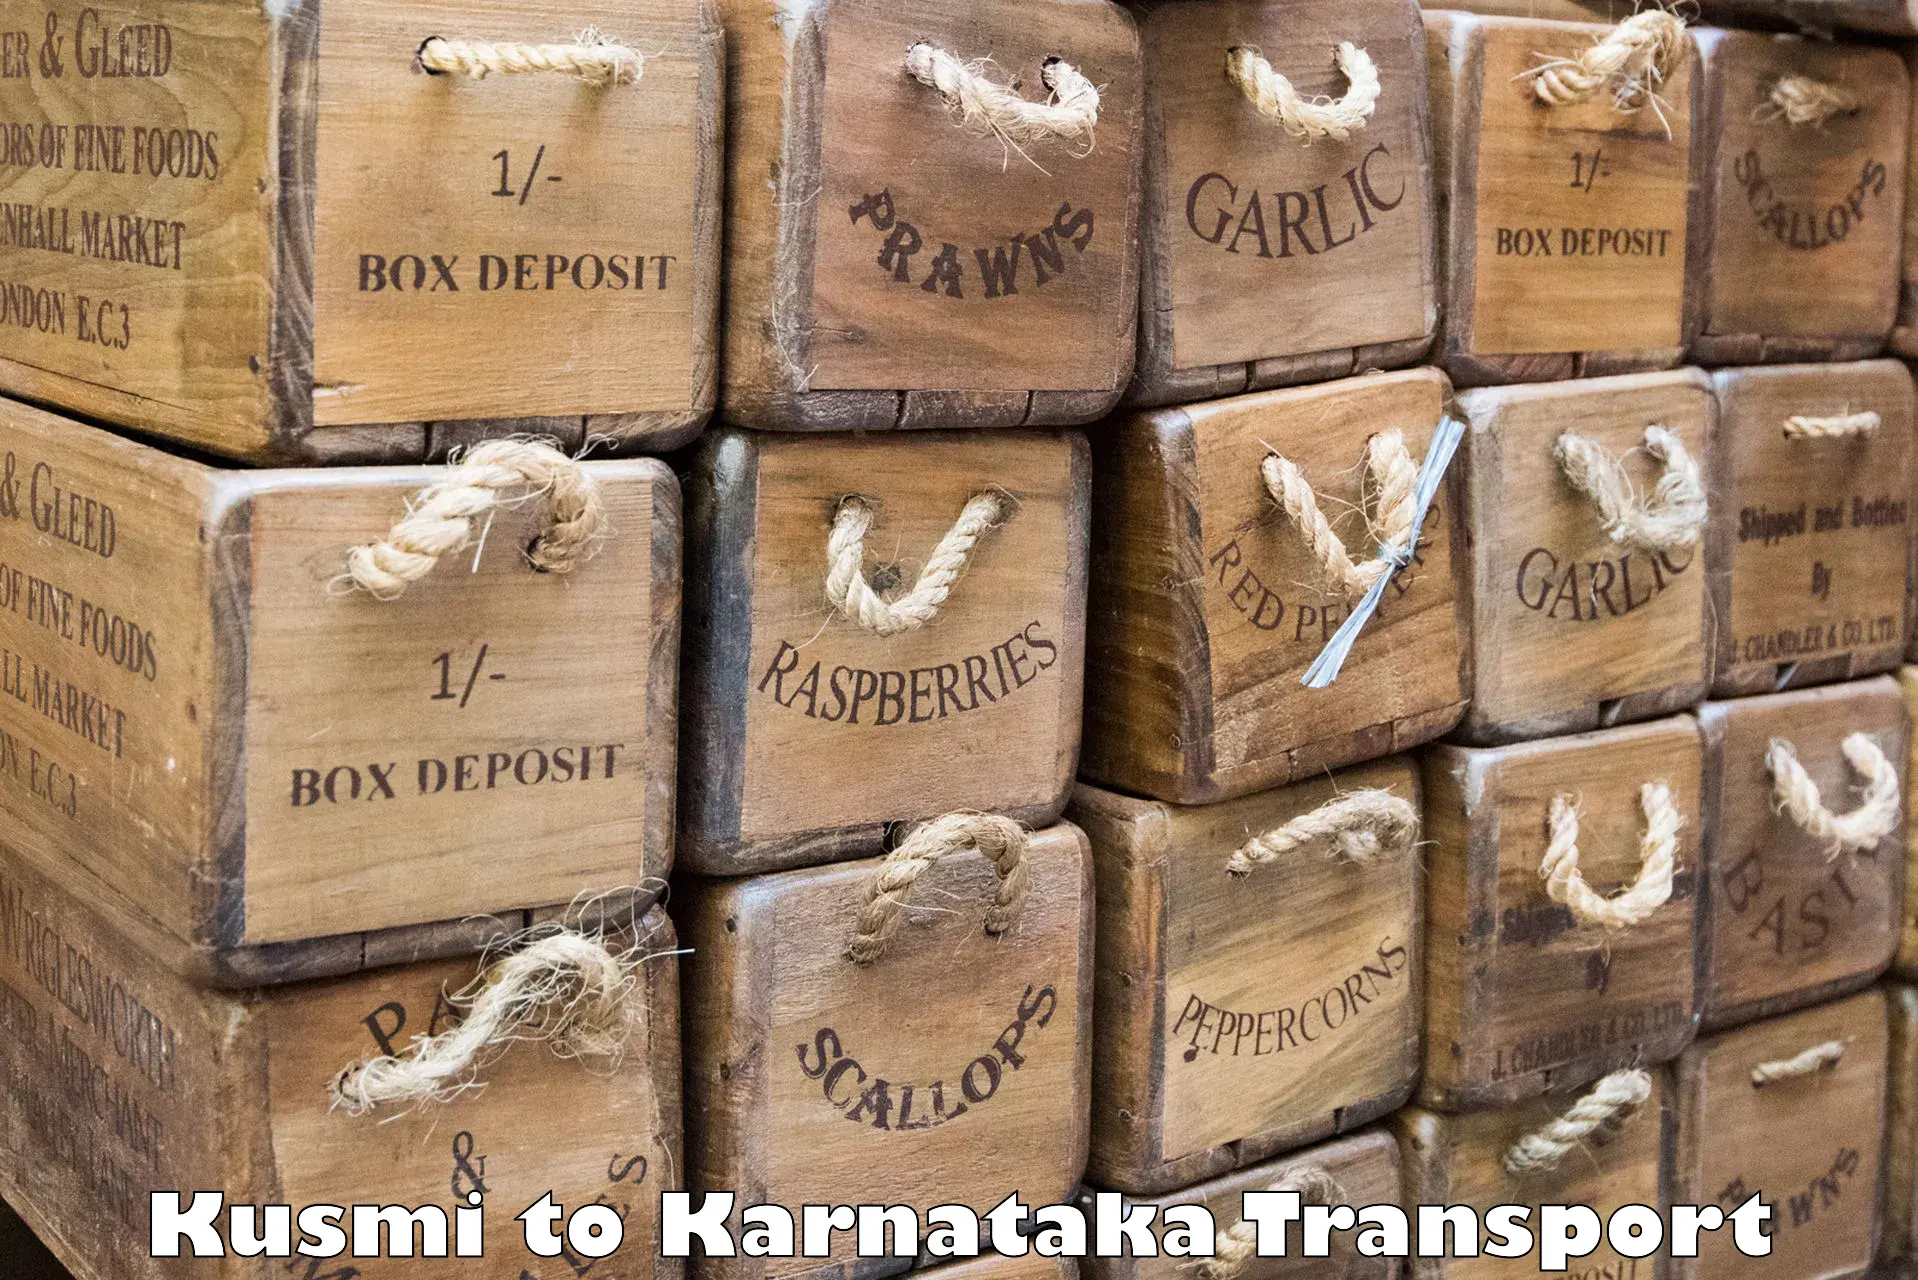 Express transport services Kusmi to Kanjarakatte